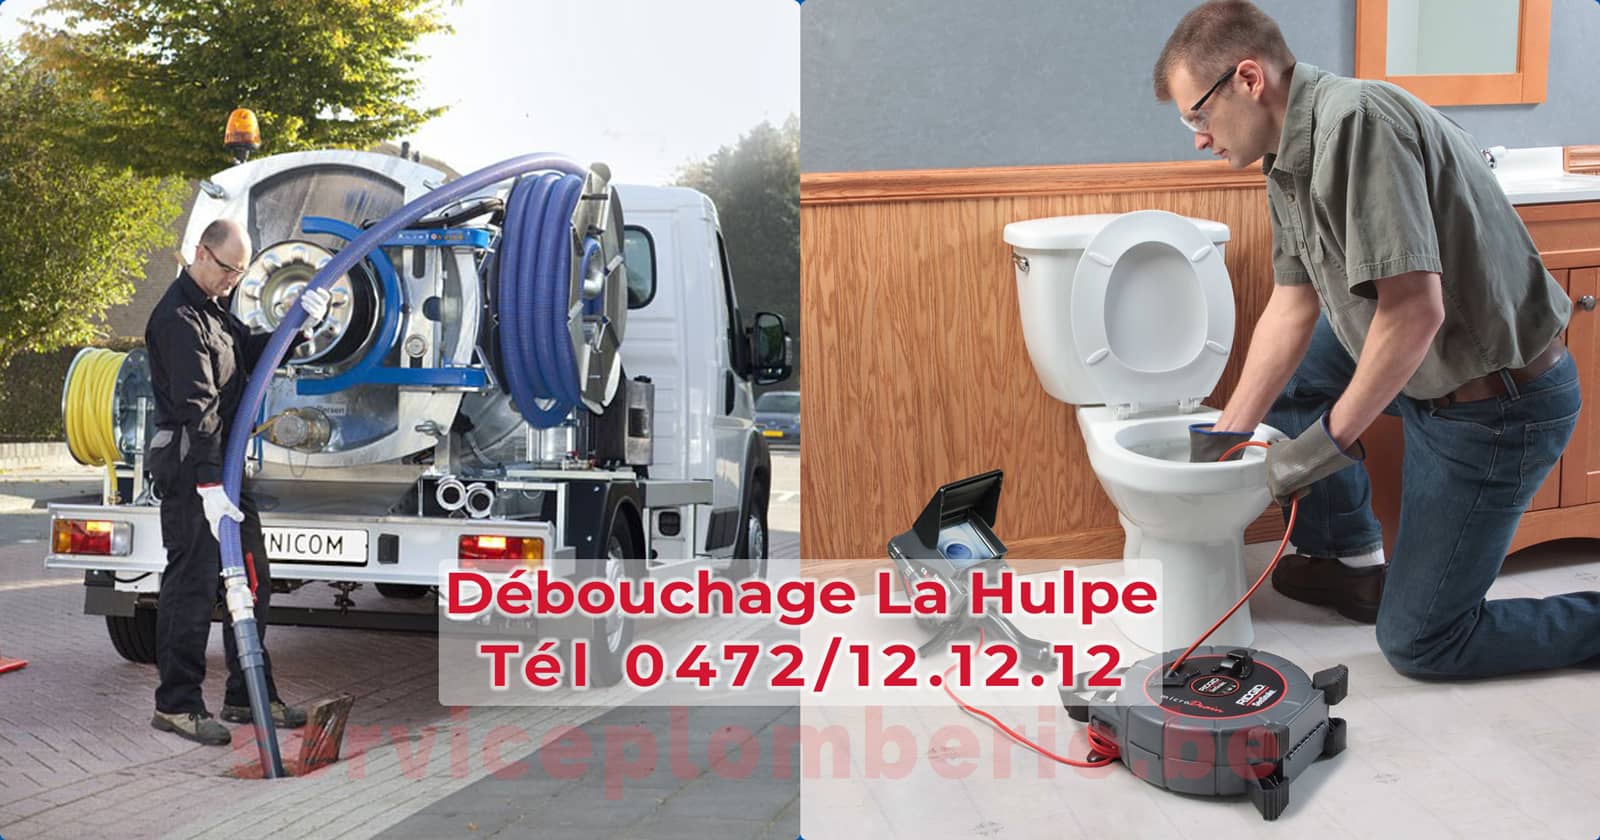 Débouchage La Hulpe d'égout Service Plomberie Tél 0472/12.12.12